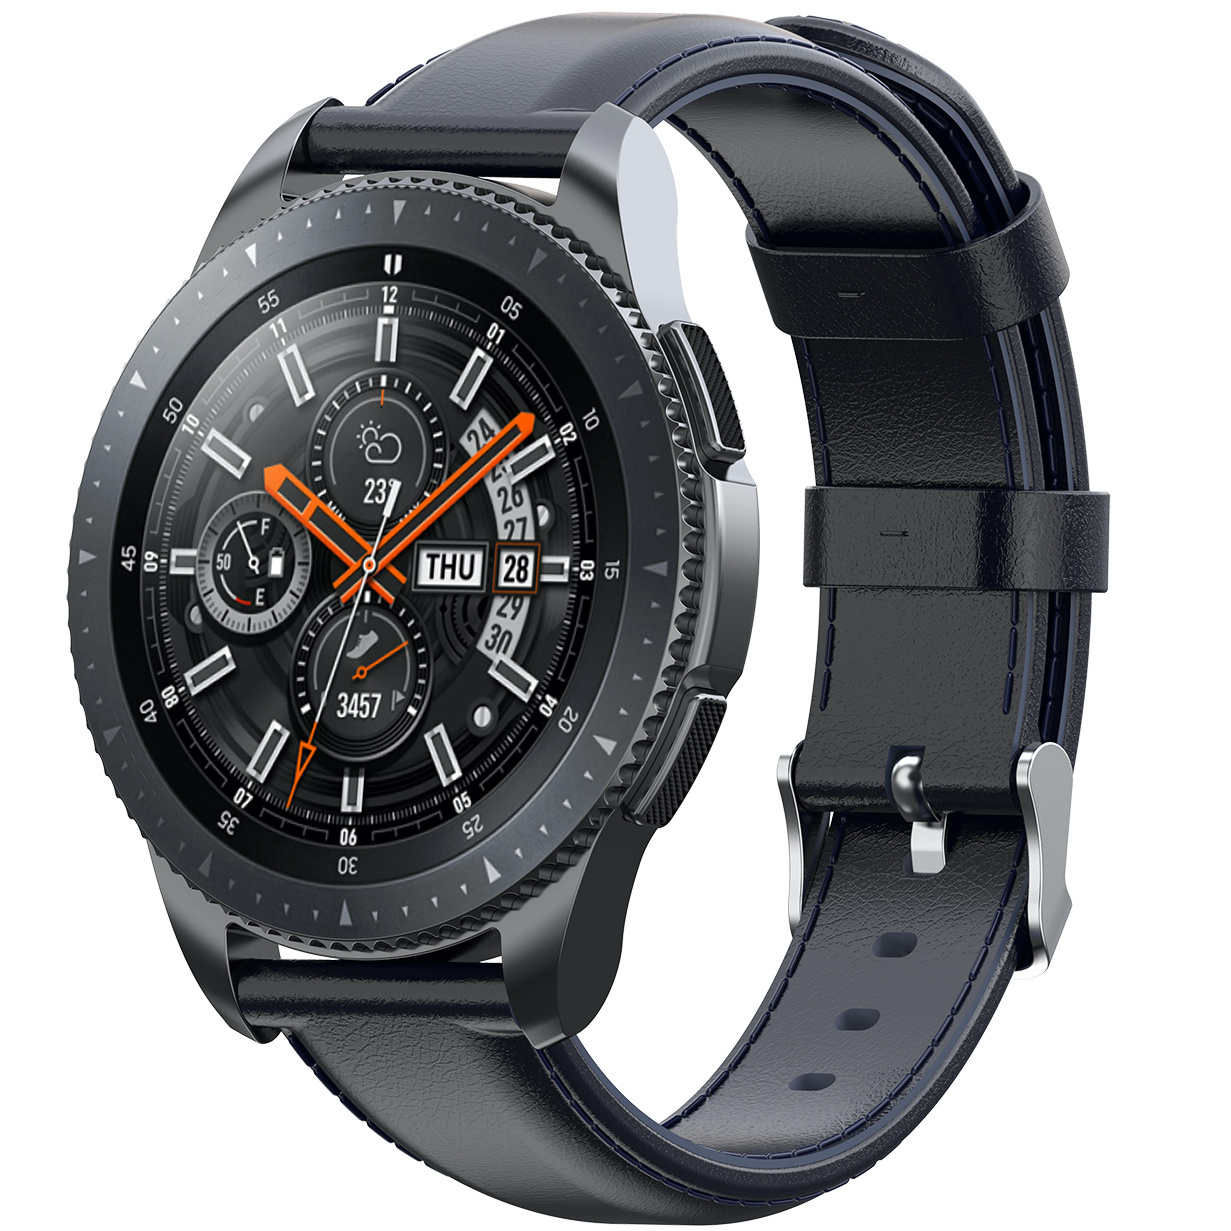 Correa de piel para el Samsung Galaxy Watch - azul oscuro